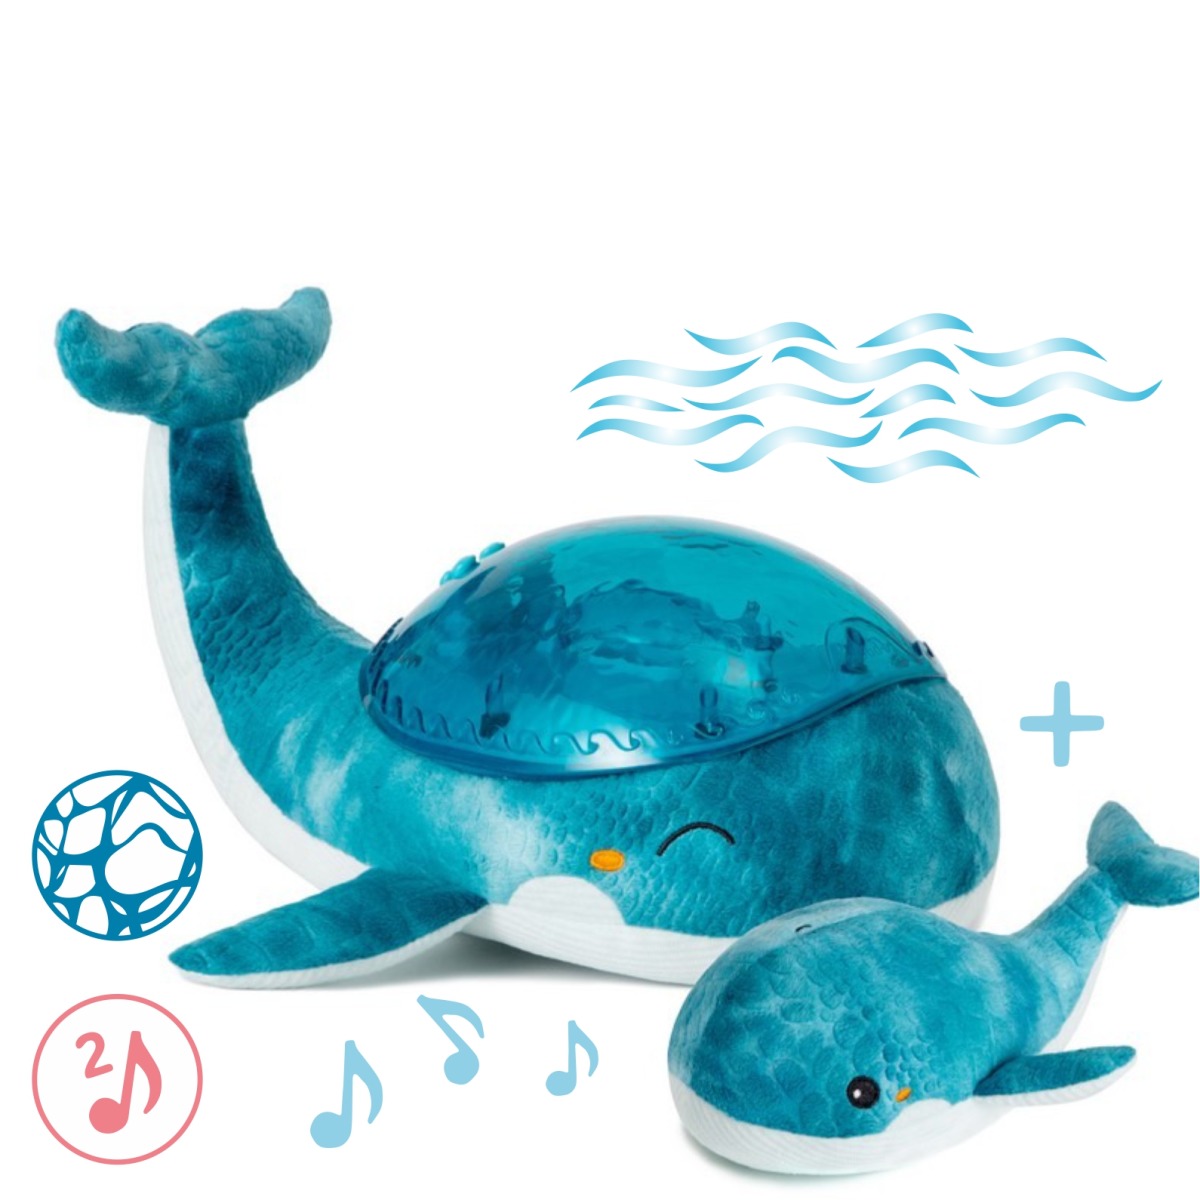 Cloud b® Tranquil Whale™ Blue Family - Lampka z projekcją świetlną i grzechotką -Wieloryb niebieski 1